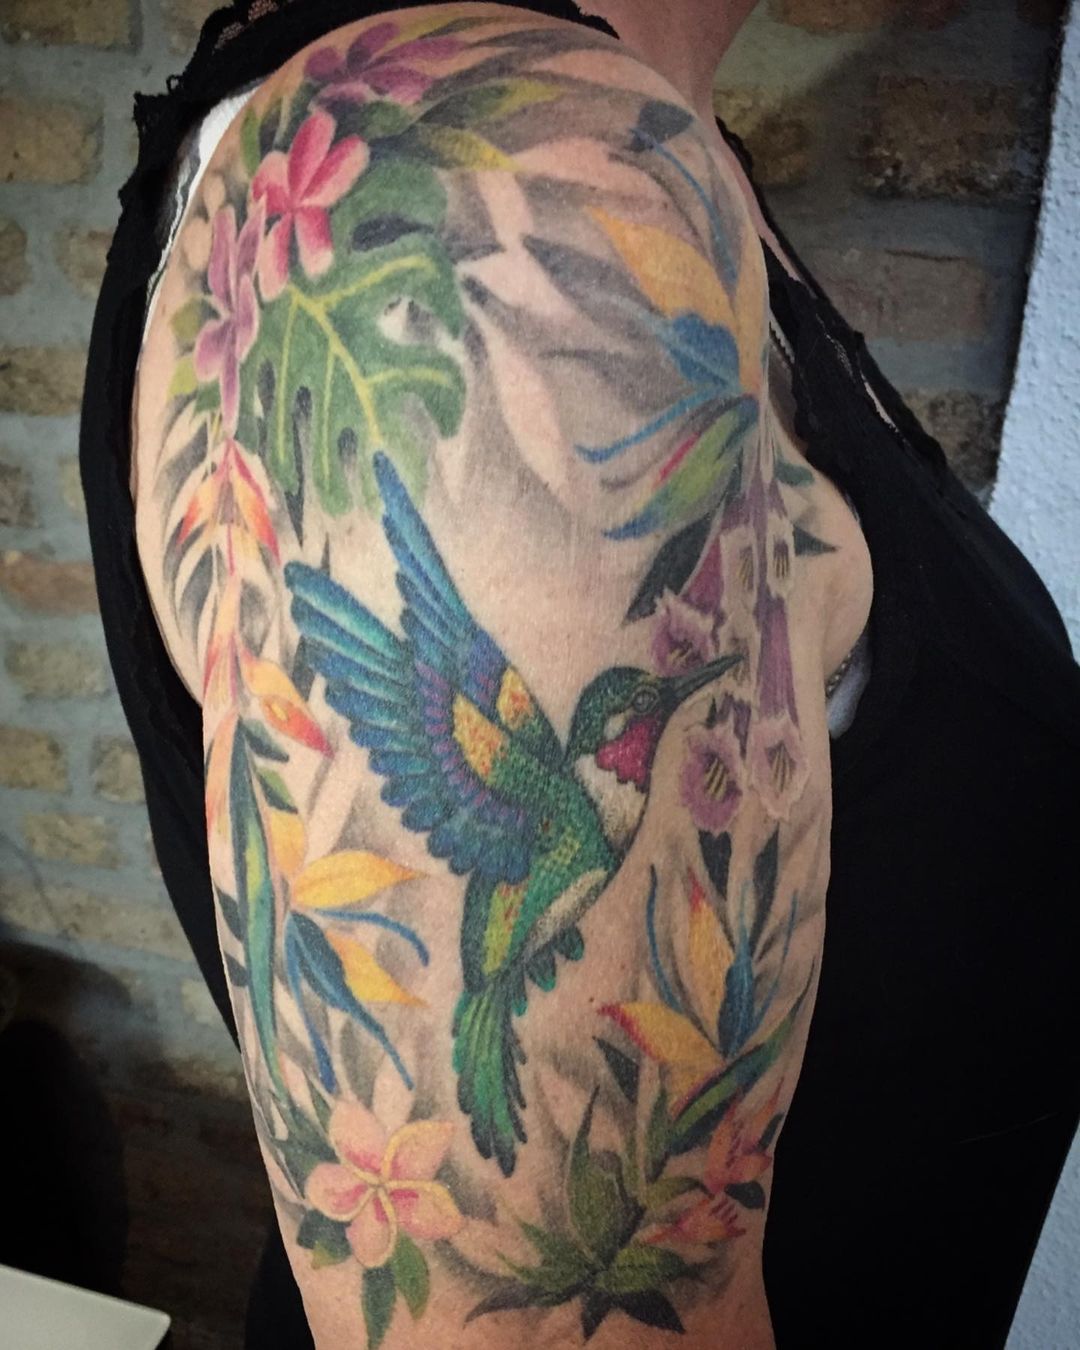 Kolibri   #tattoo #tattoos #tattooed #tattooartist #art #love #artist #instagood